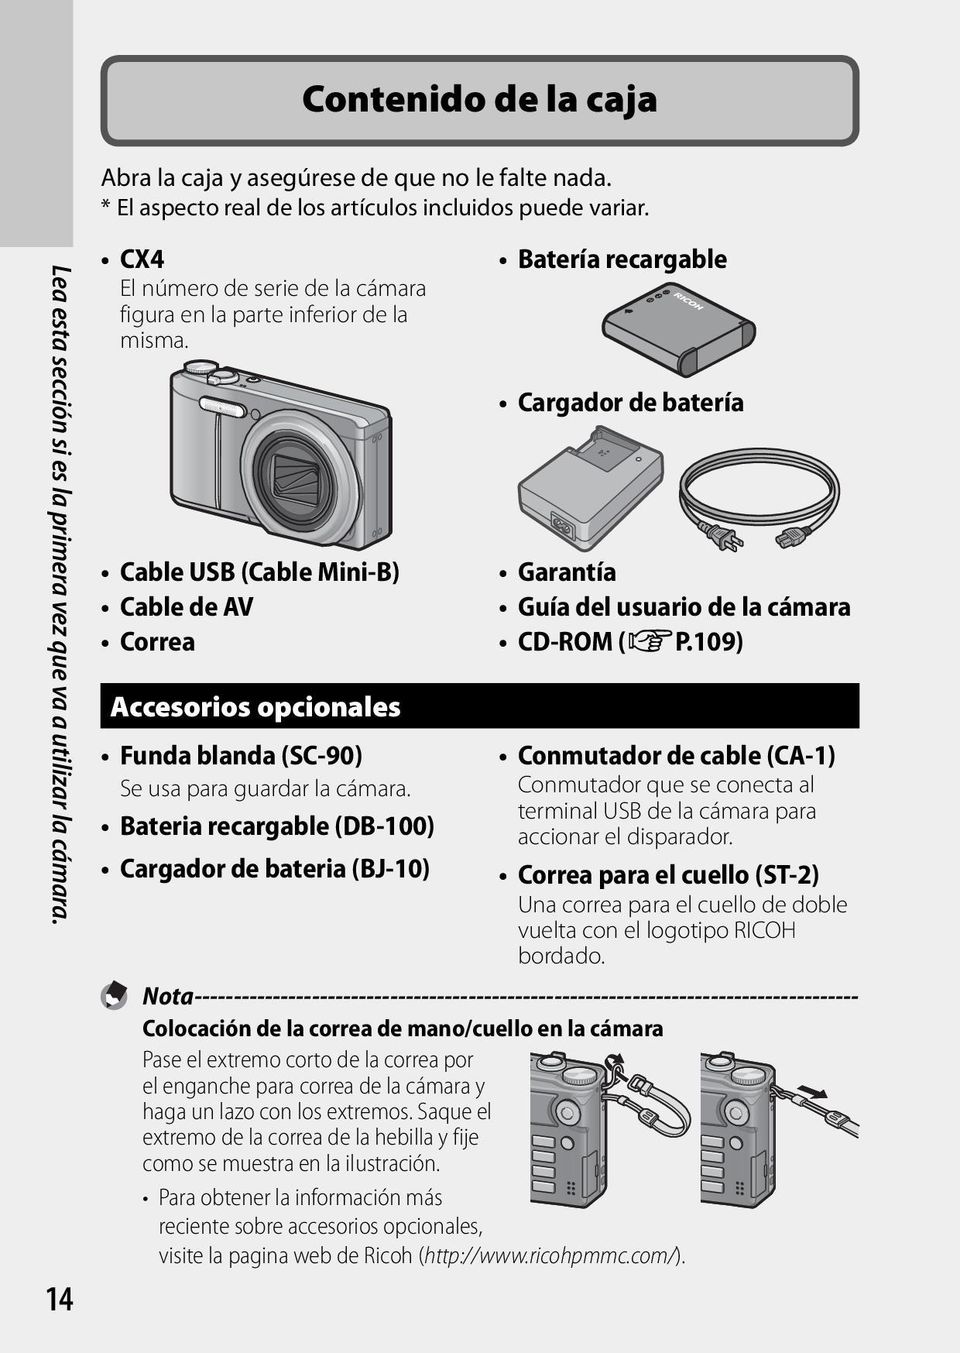 Bateria recargable (DB-100) Cargador de bateria (BJ-10) Batería recargable Cargador de batería Garantía Guía del usuario de la cámara CD-ROM (GP.